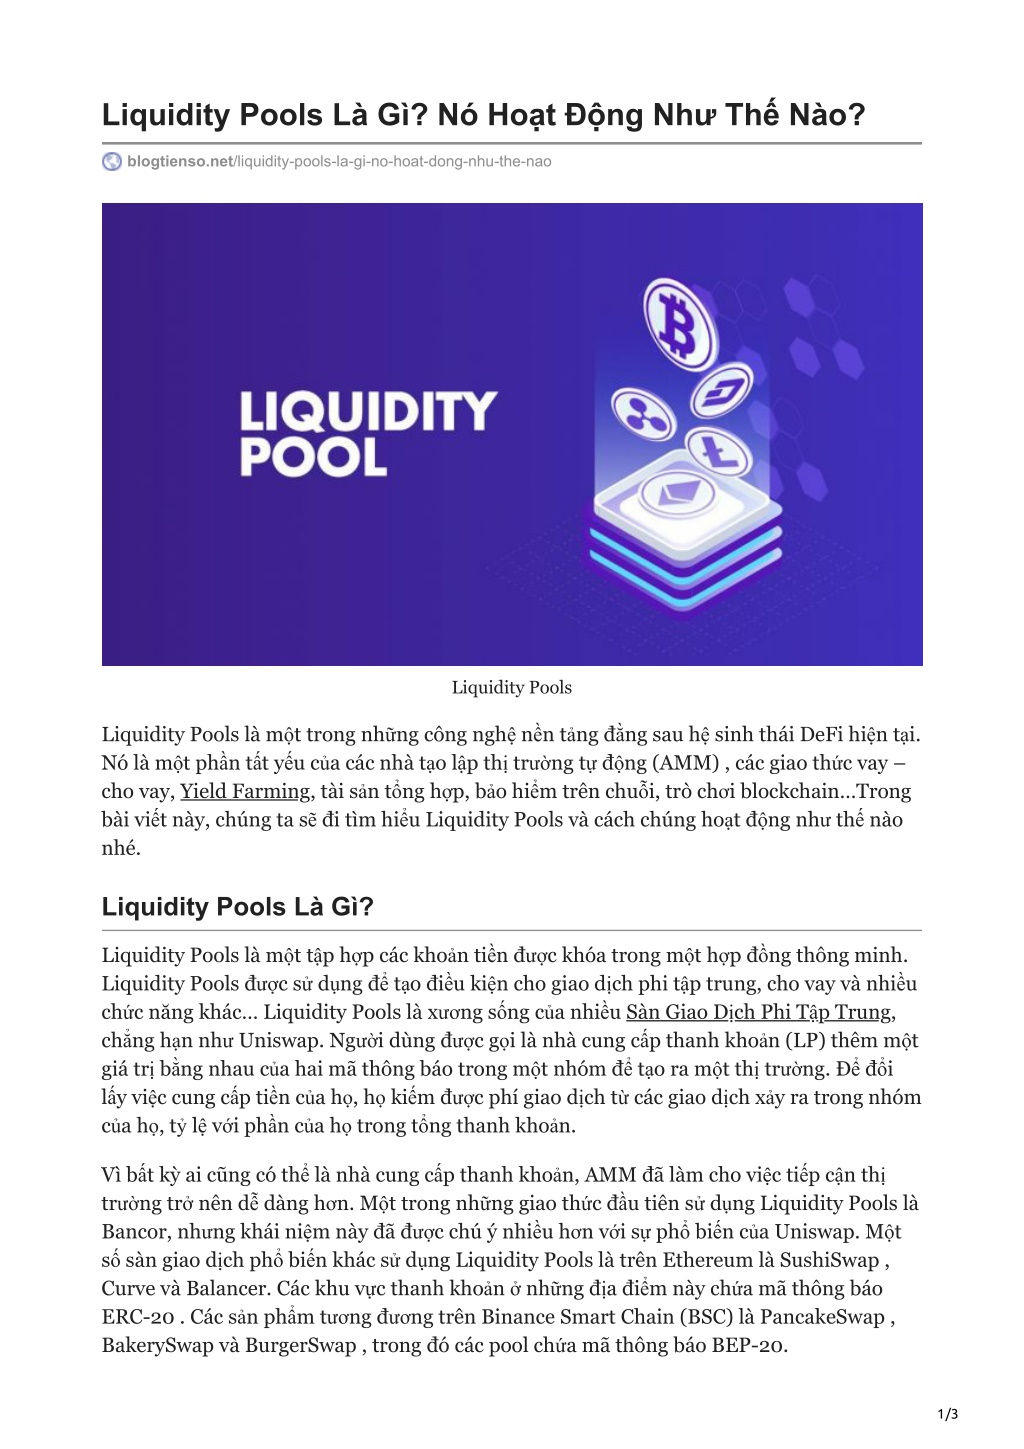 PPT - Liquidity Pools Là Gì? Nó Hoạt Động Như Thế Nào ...